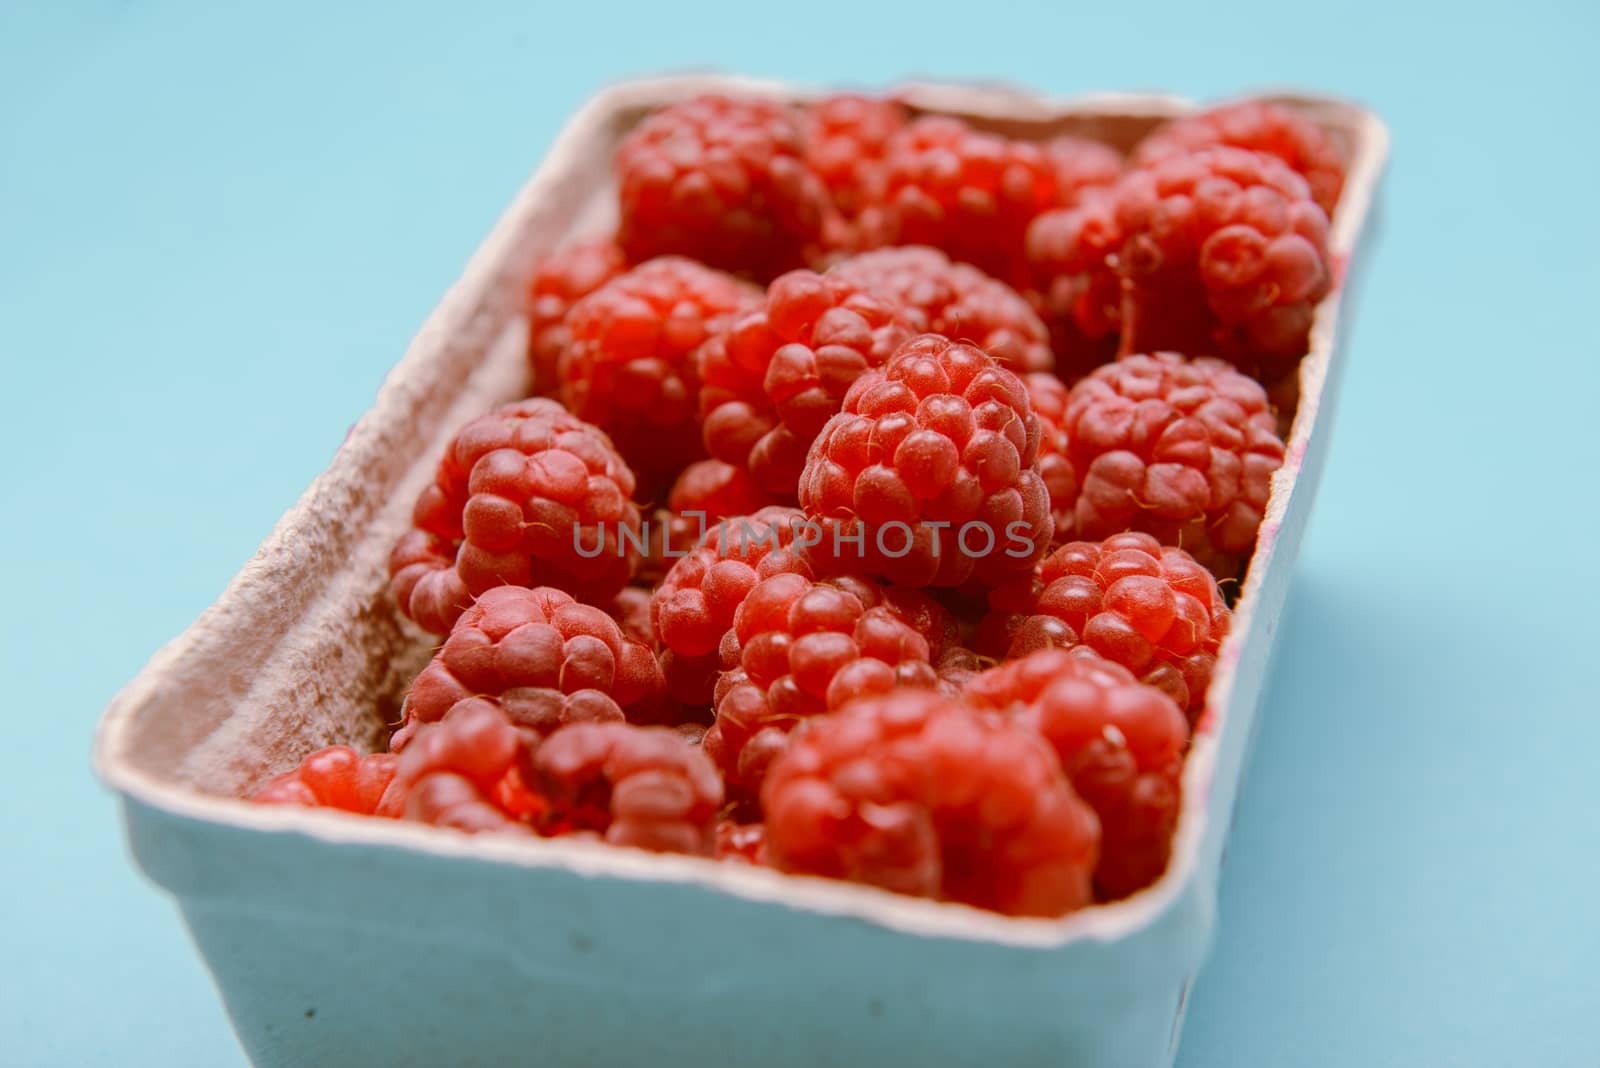 box of fresh raspberries on a blue background